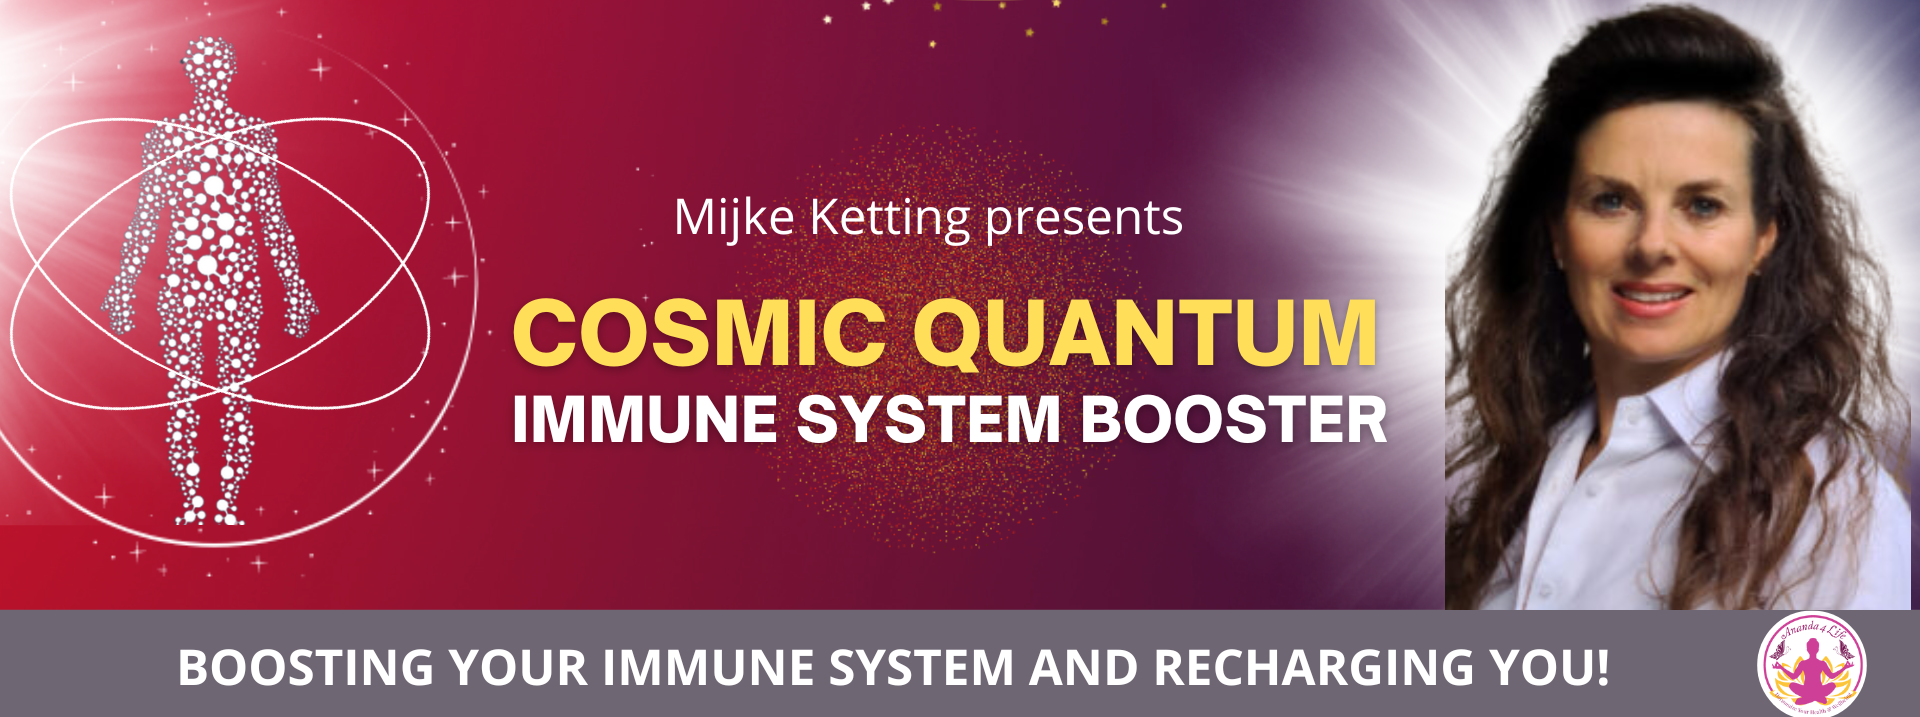 Cosmic Quantum Immune System Booster 1